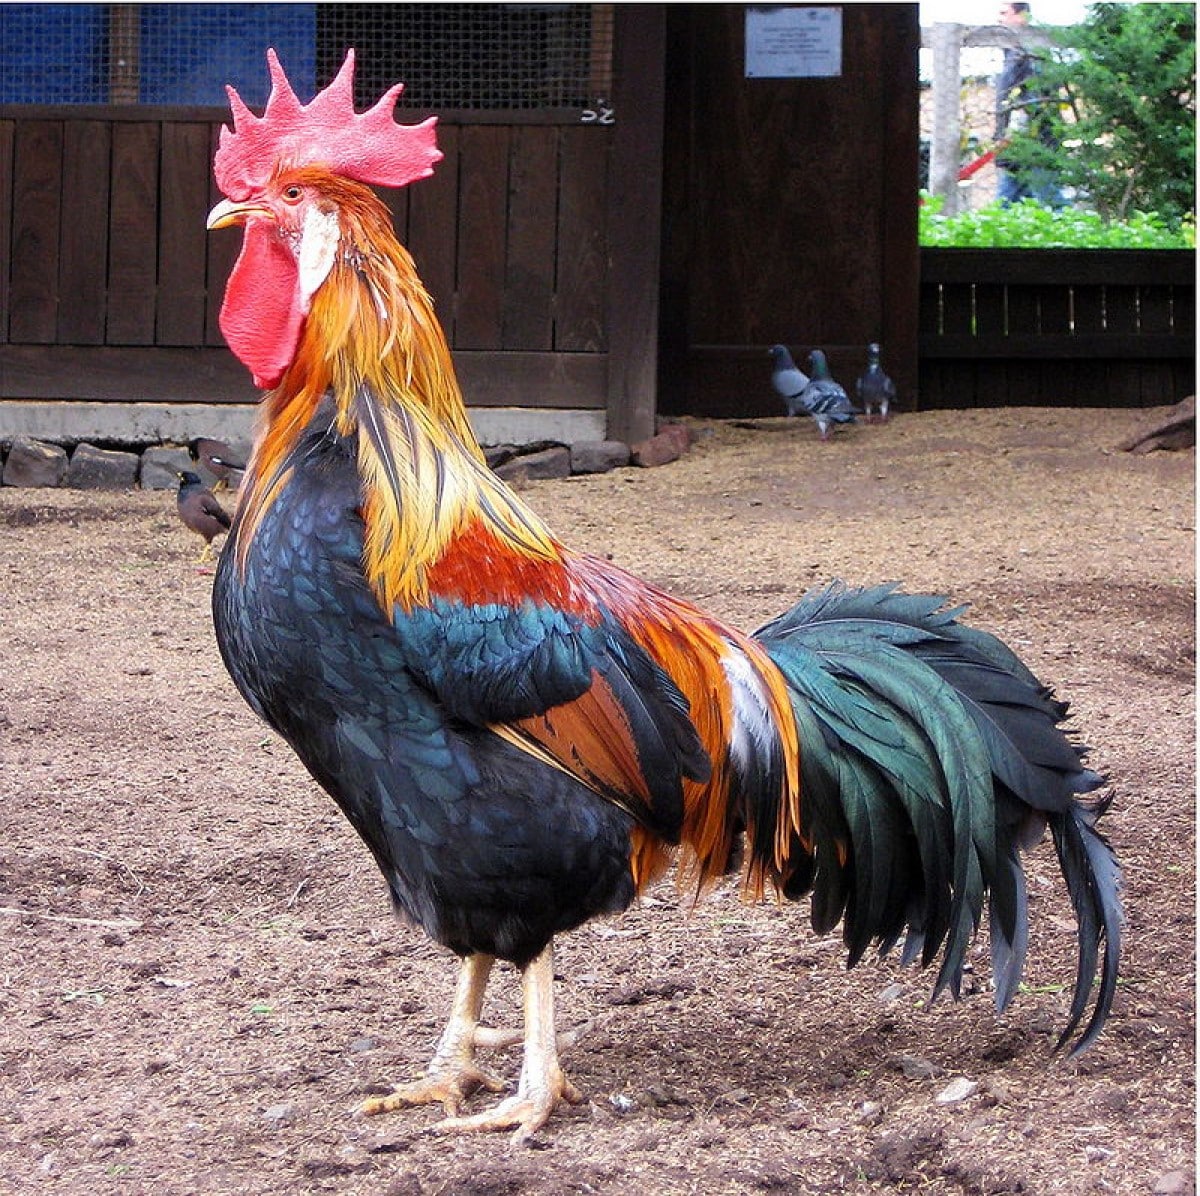 O galo (Gallus gallus) é o macho da galinha, comumente tratado como um animal heráldico.